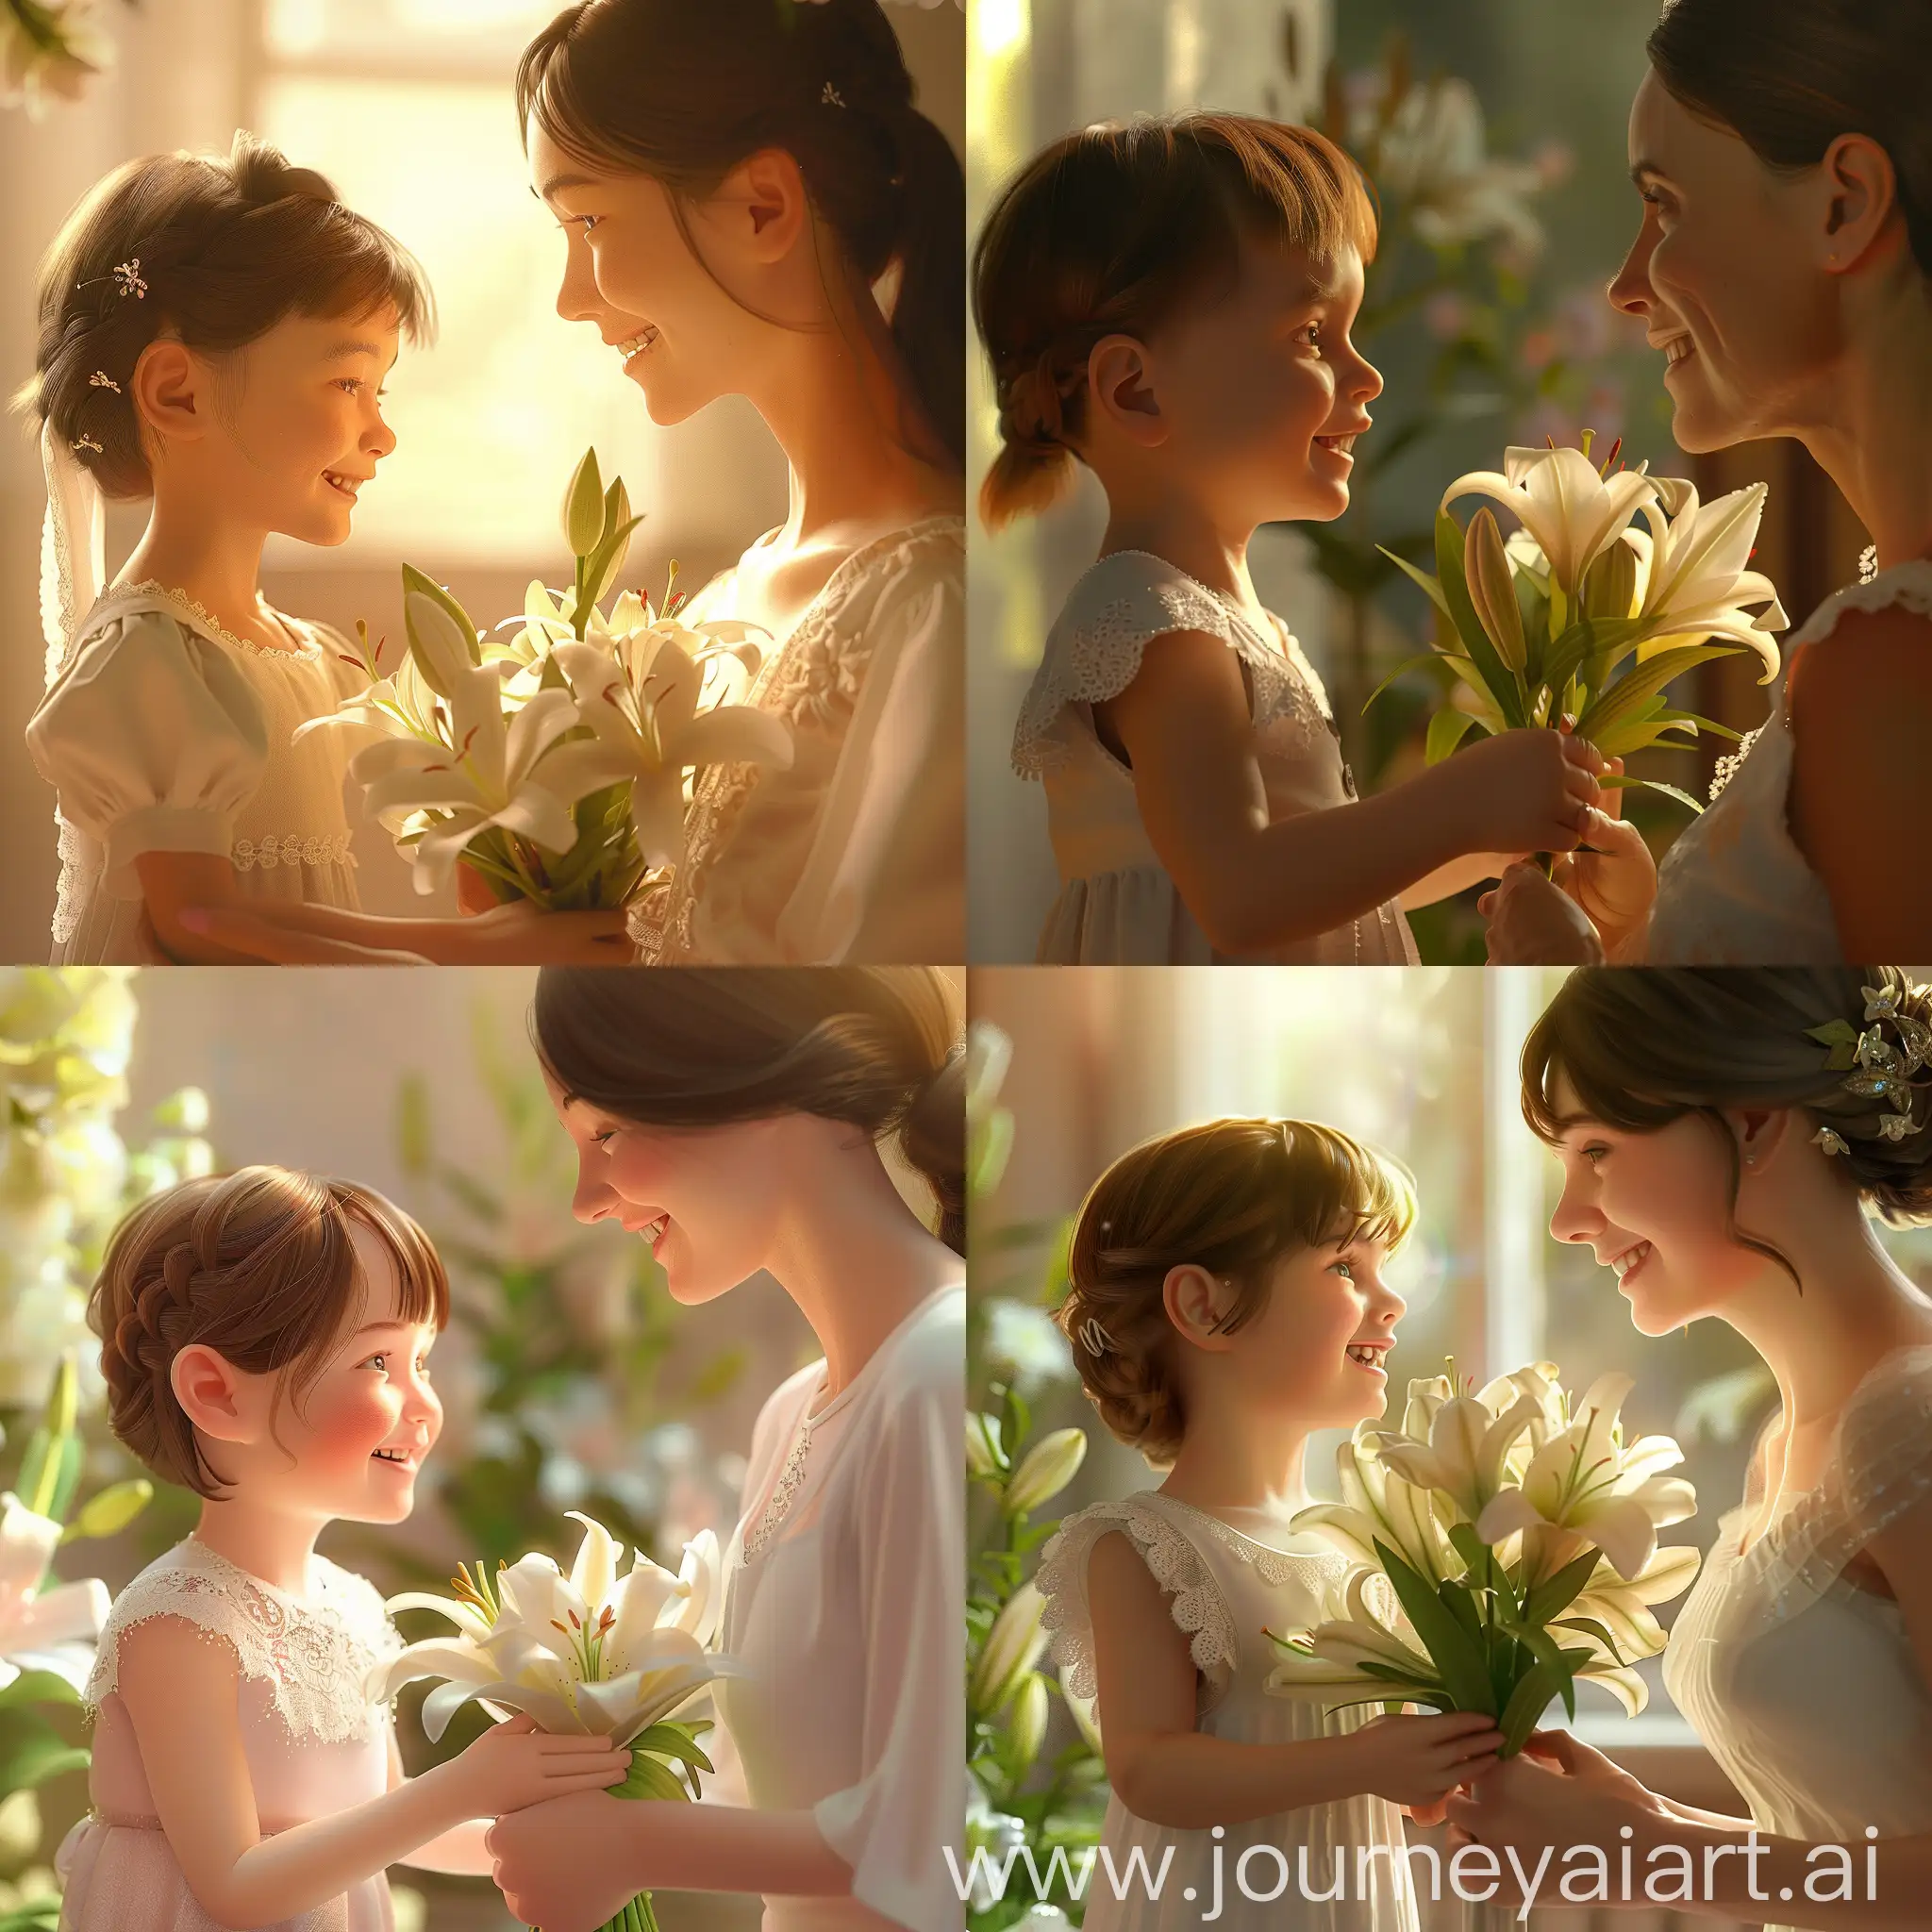 母亲节   一个可爱的小朋友拿一束的百合花微笑的看着漂亮的母亲  画面很温馨 很美丽   画面是3D风格 谢谢